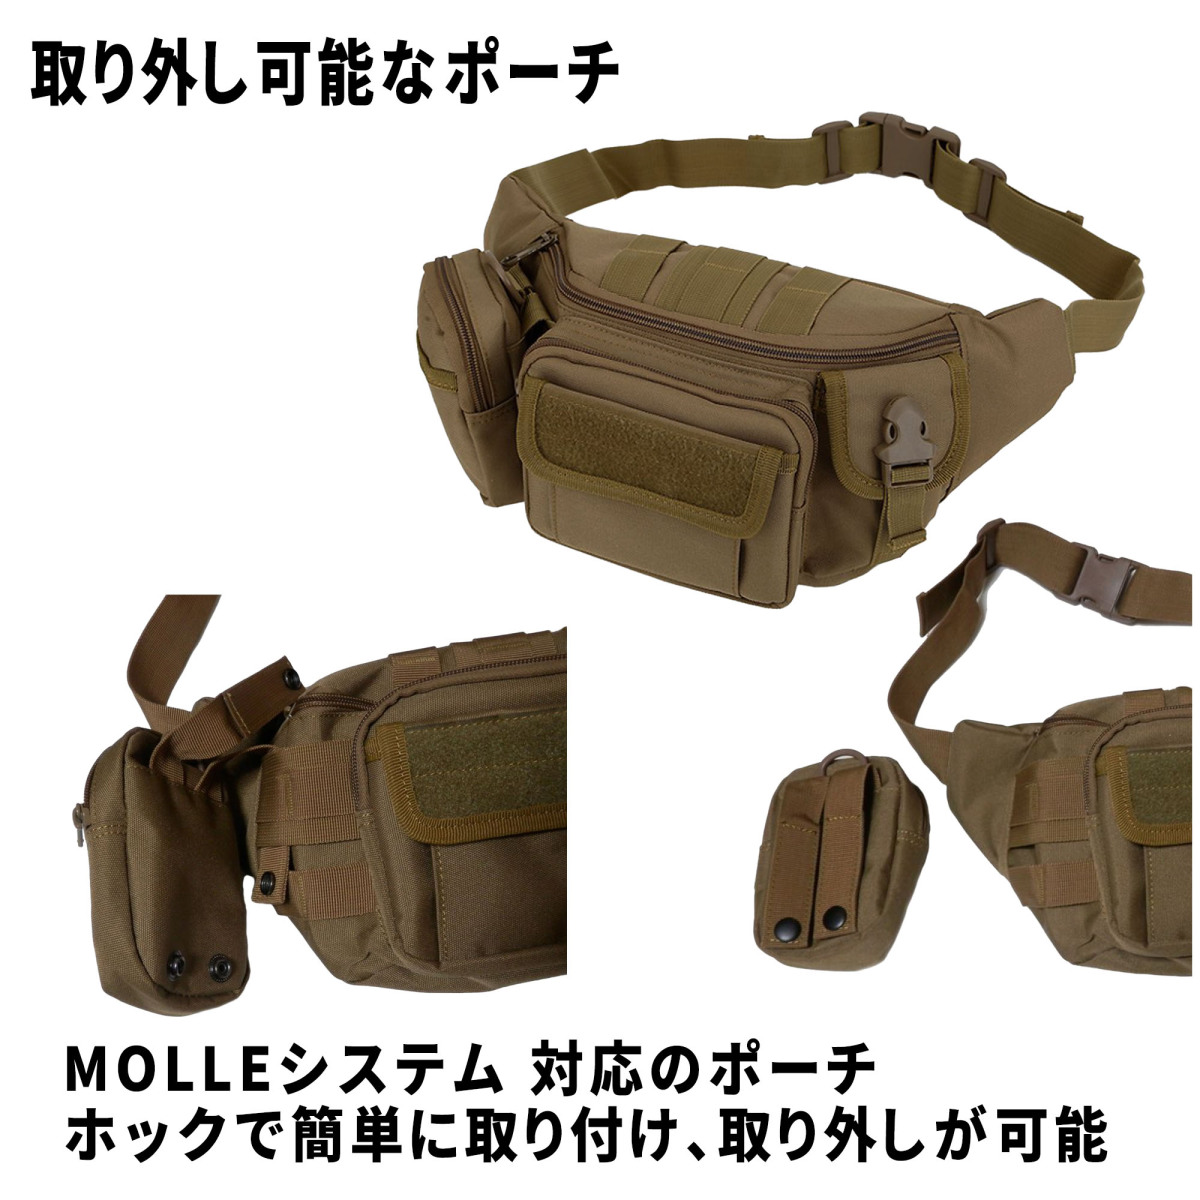  сумка-пояс WMT005 милитари камуфляж утка рисунок поясная сумка милитари сумка водонепроницаемый MOLLE система 